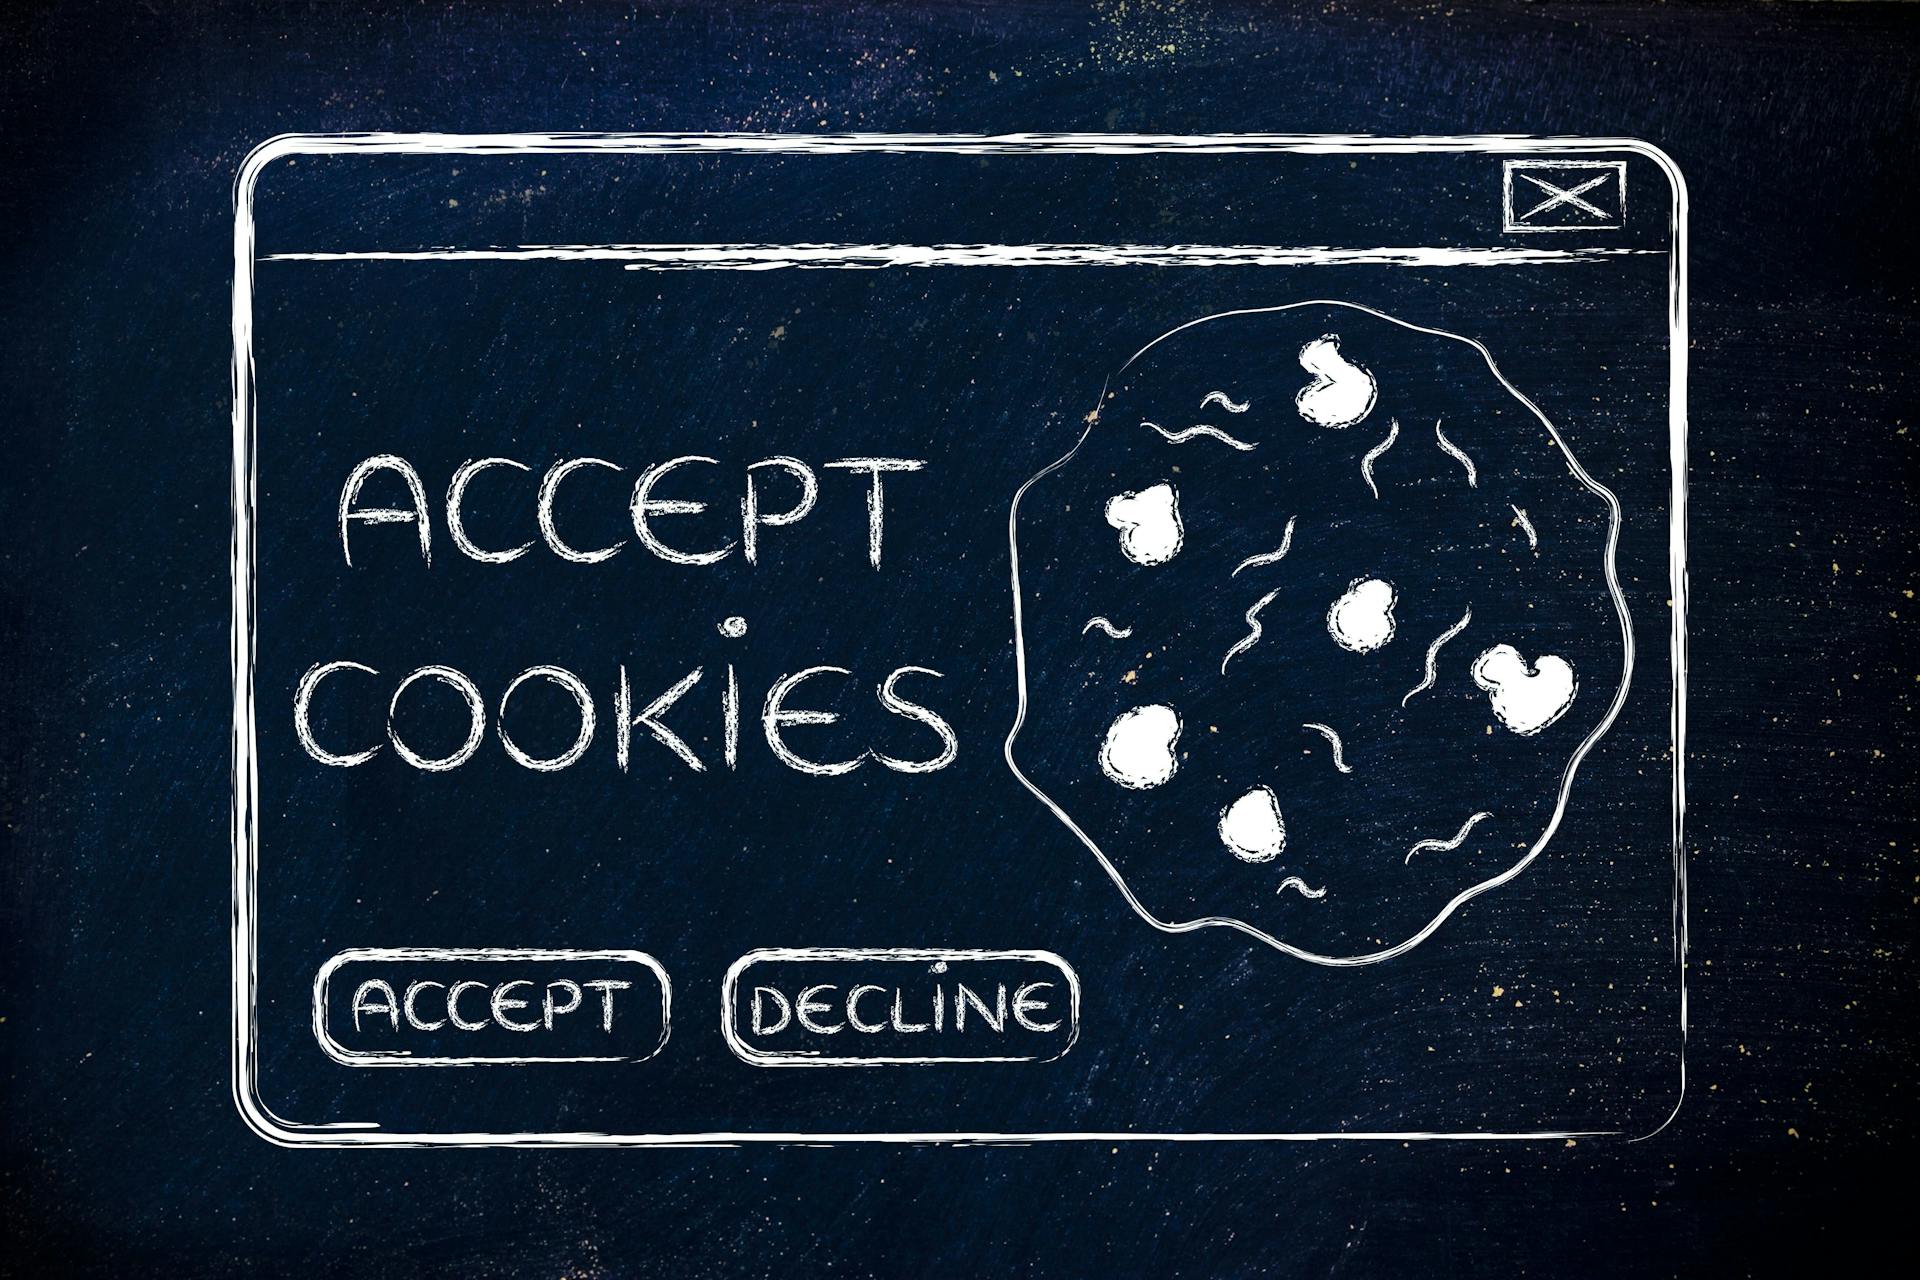 Aktive Cookie-Einwilligung laut BGH erforderlich